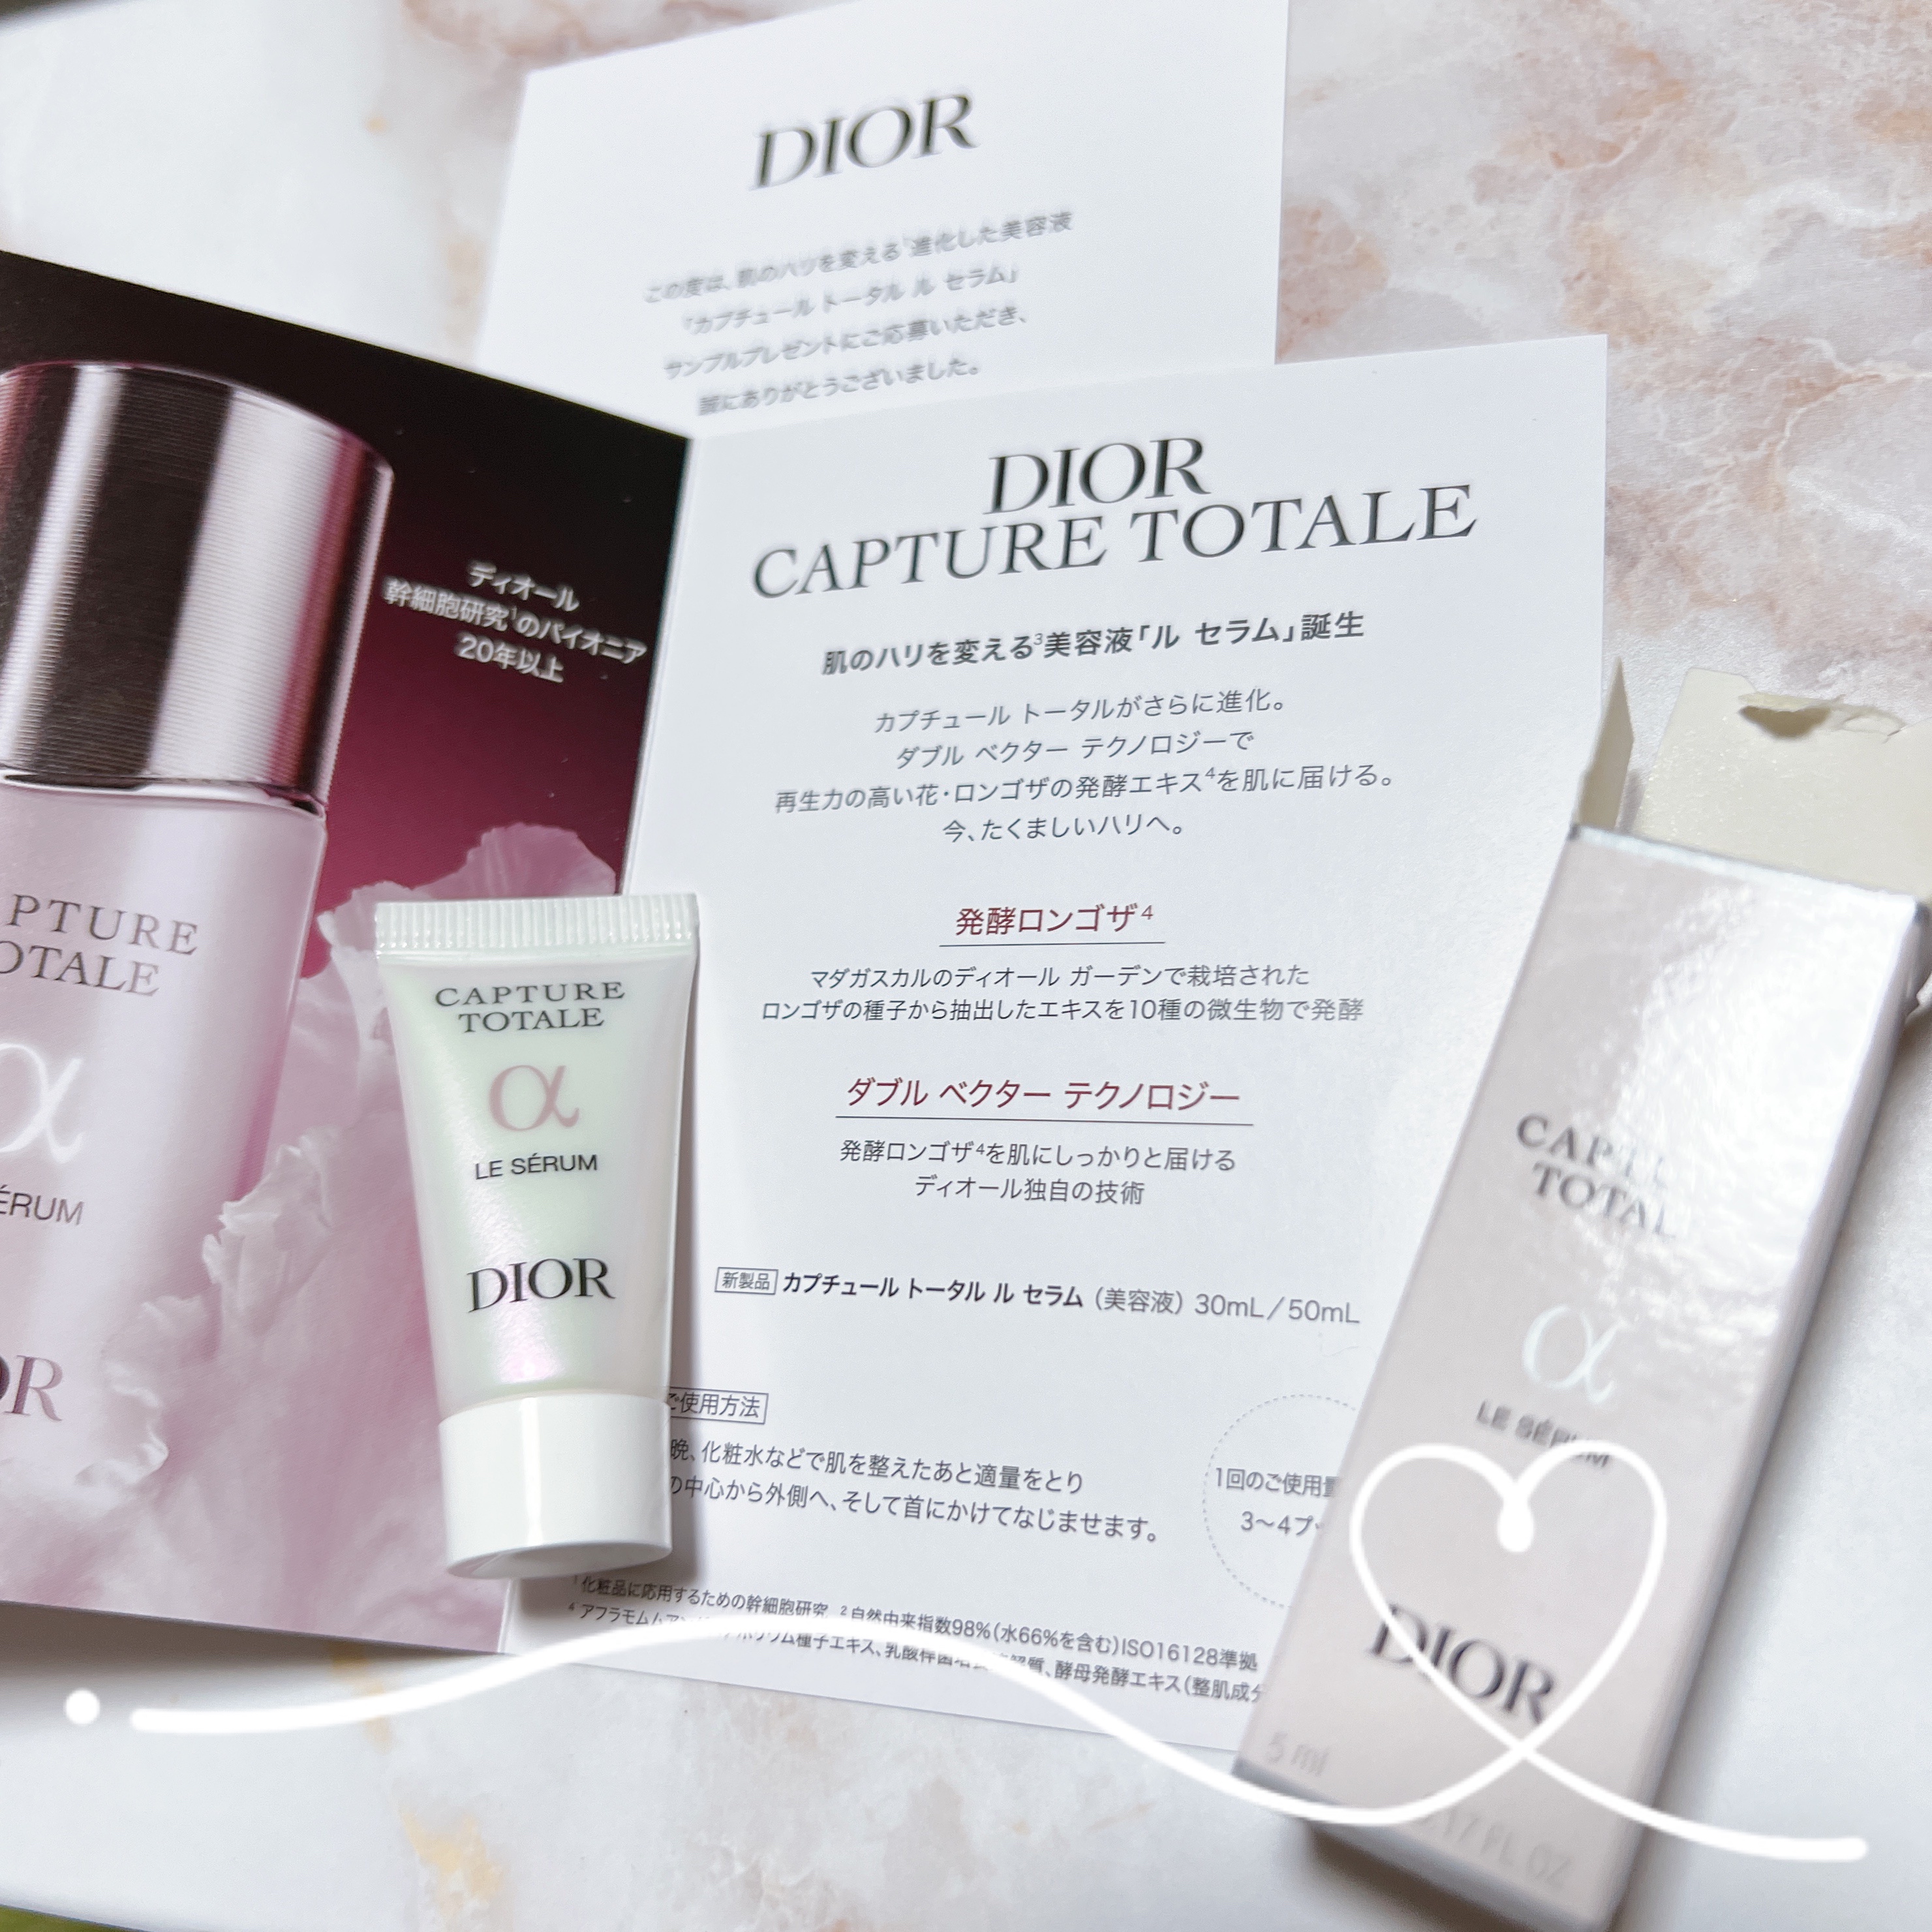 Dior ディオール スキンケア 試供品 サンプル - トライアルセット